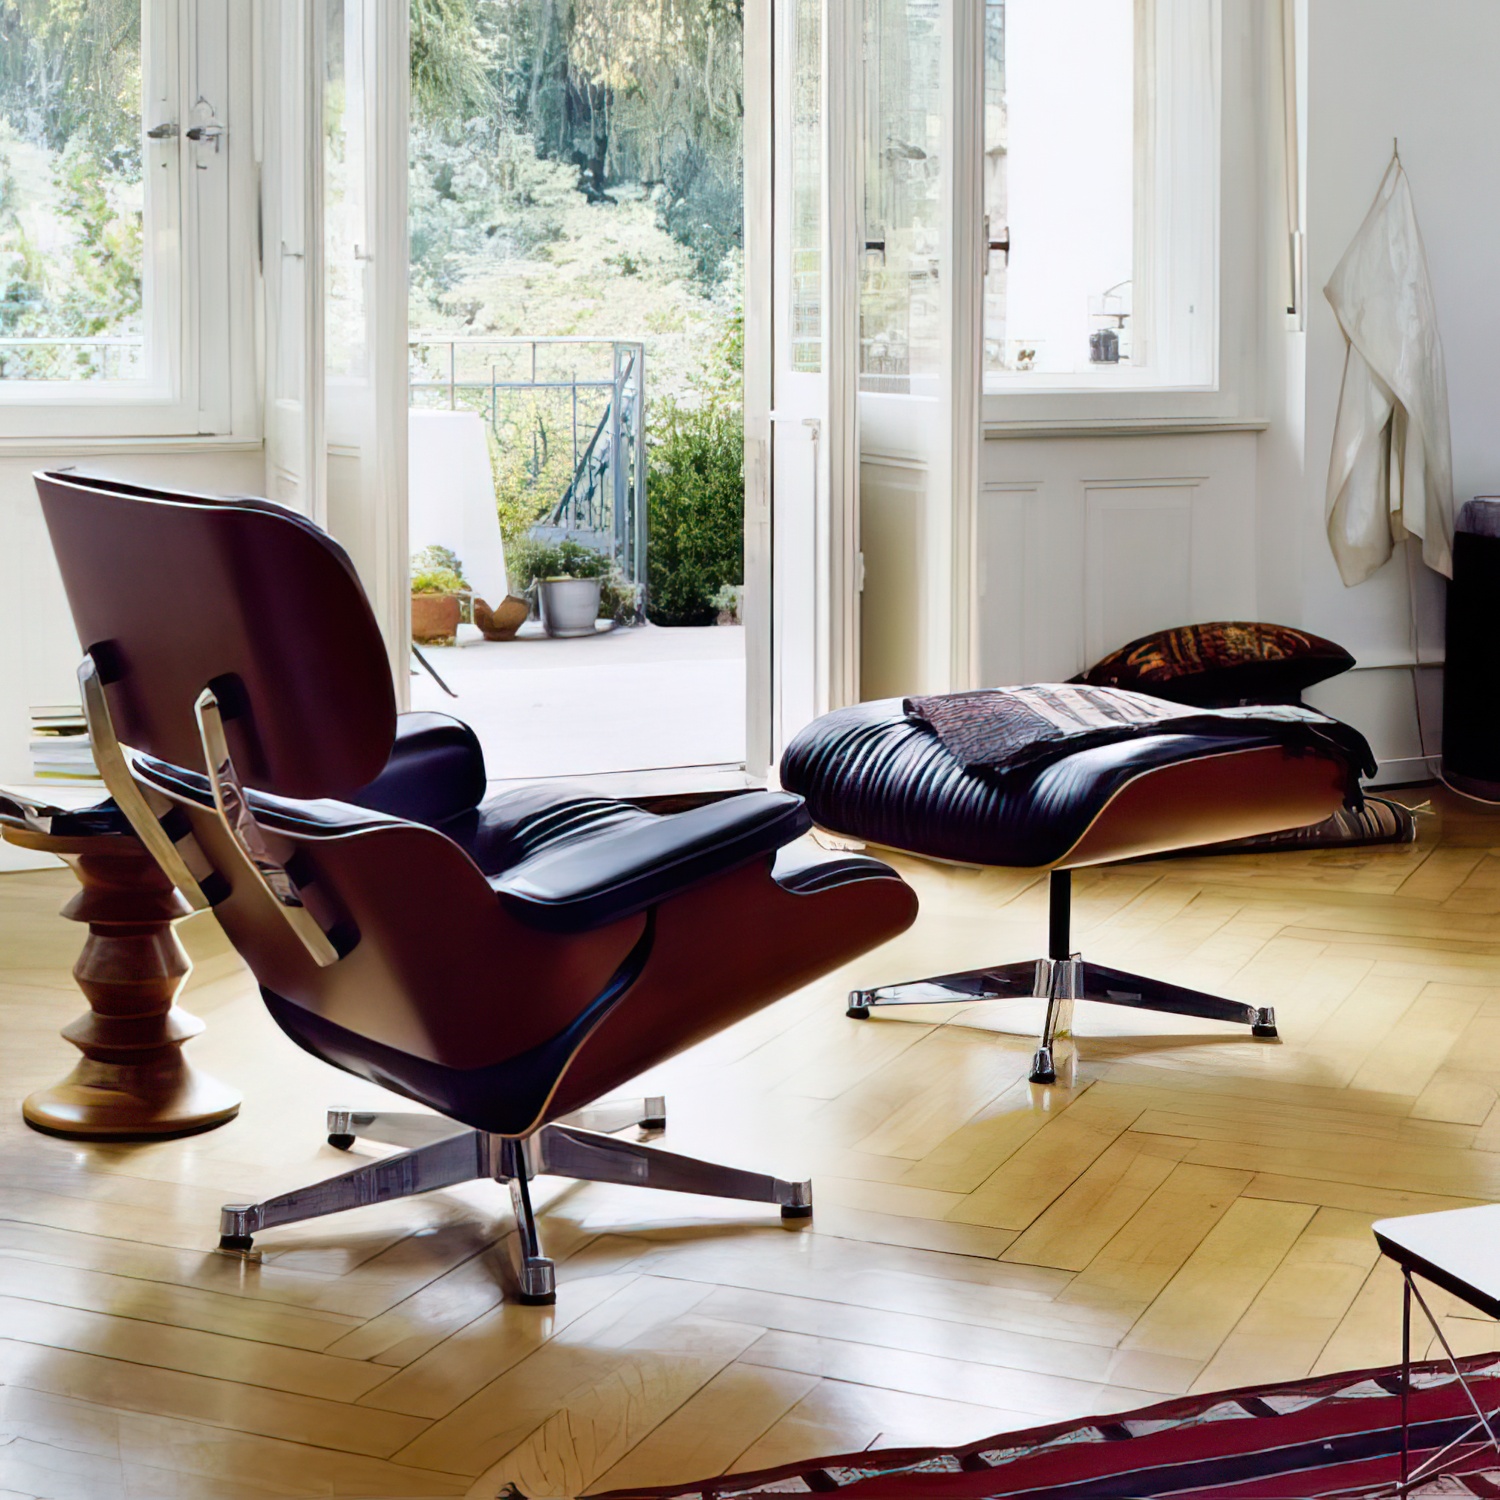 Lounge Chair und Ottoman 41211600 Nussbaumschale Leder in Olive